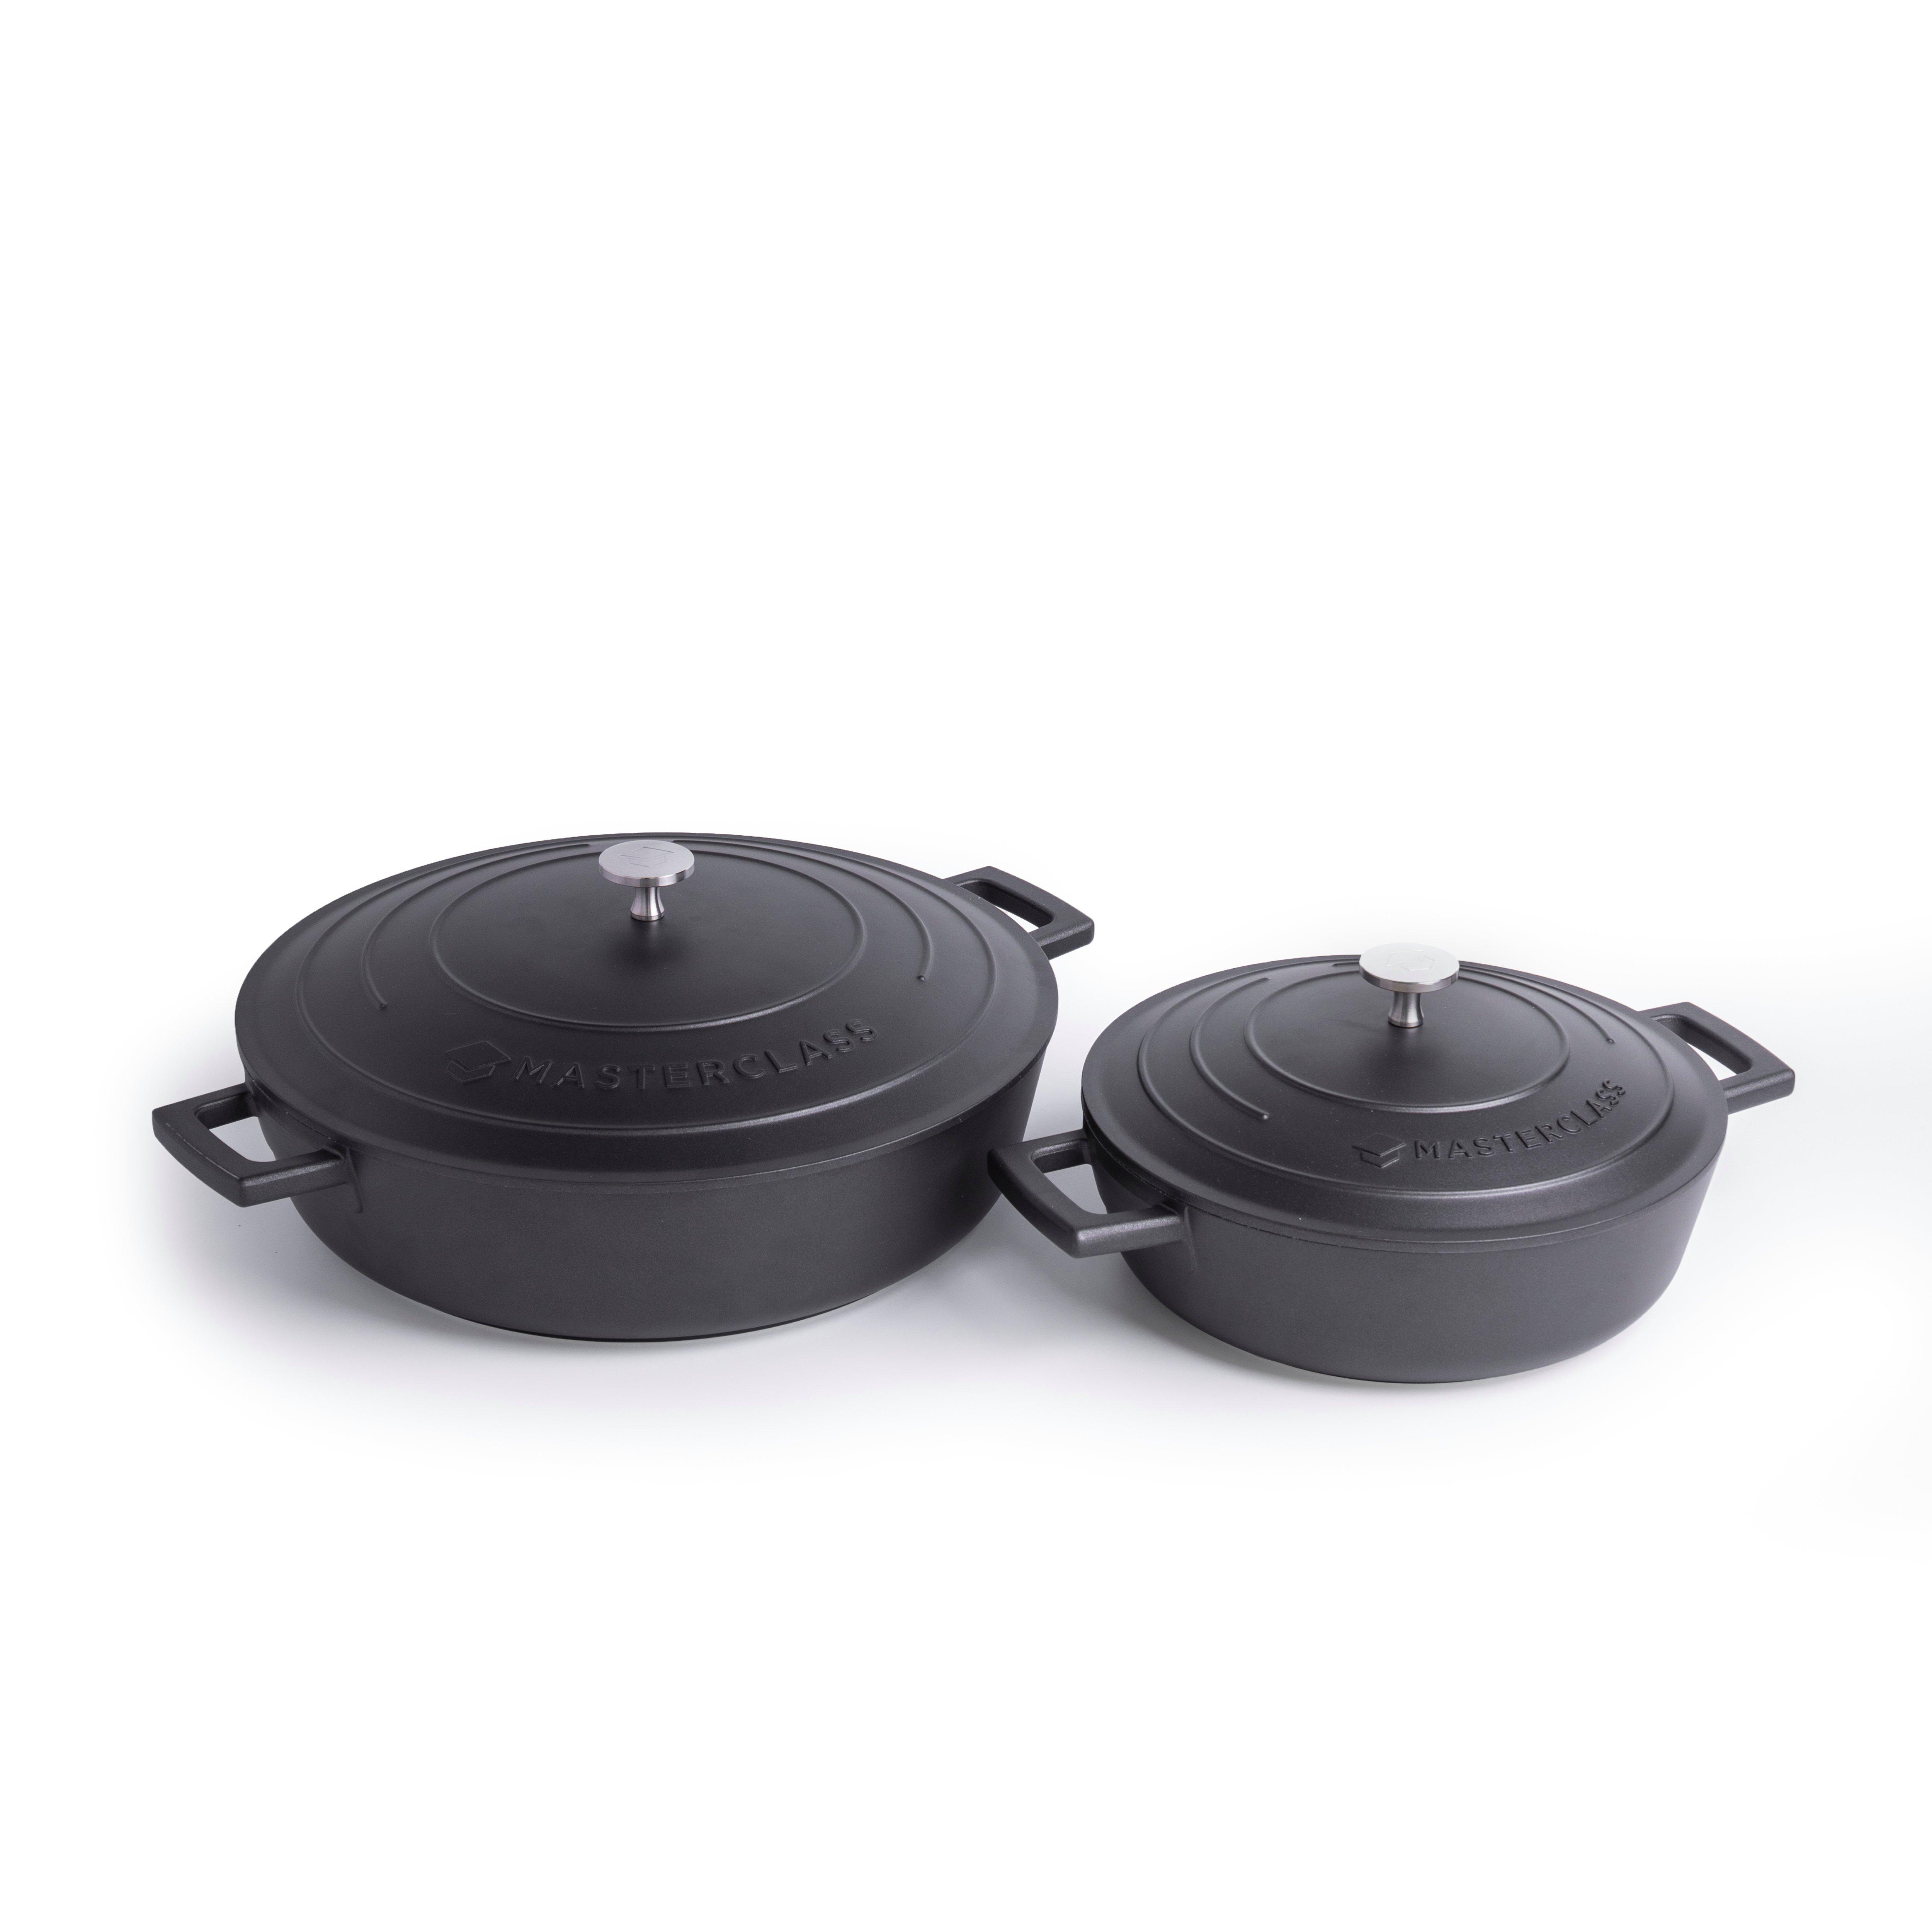 2pc Cast Aluminium Casserole Dish Set with 2x Non-Stick Casserole Dishes, 2.5L and 5L, Black